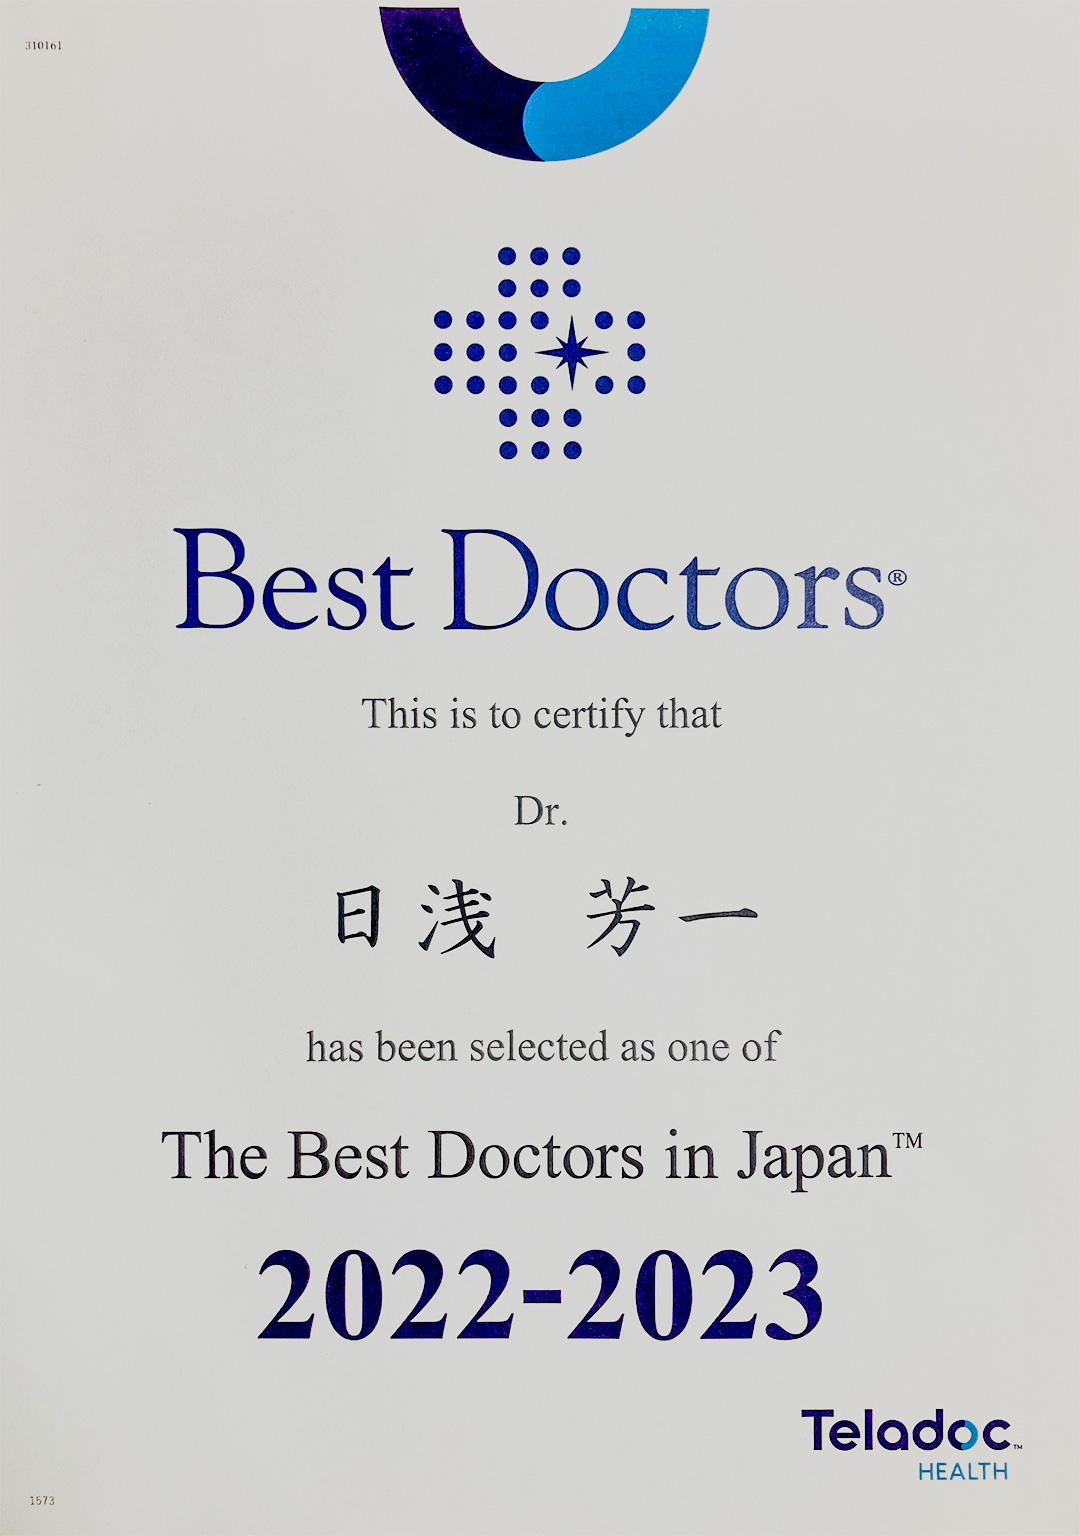 Best Doctors